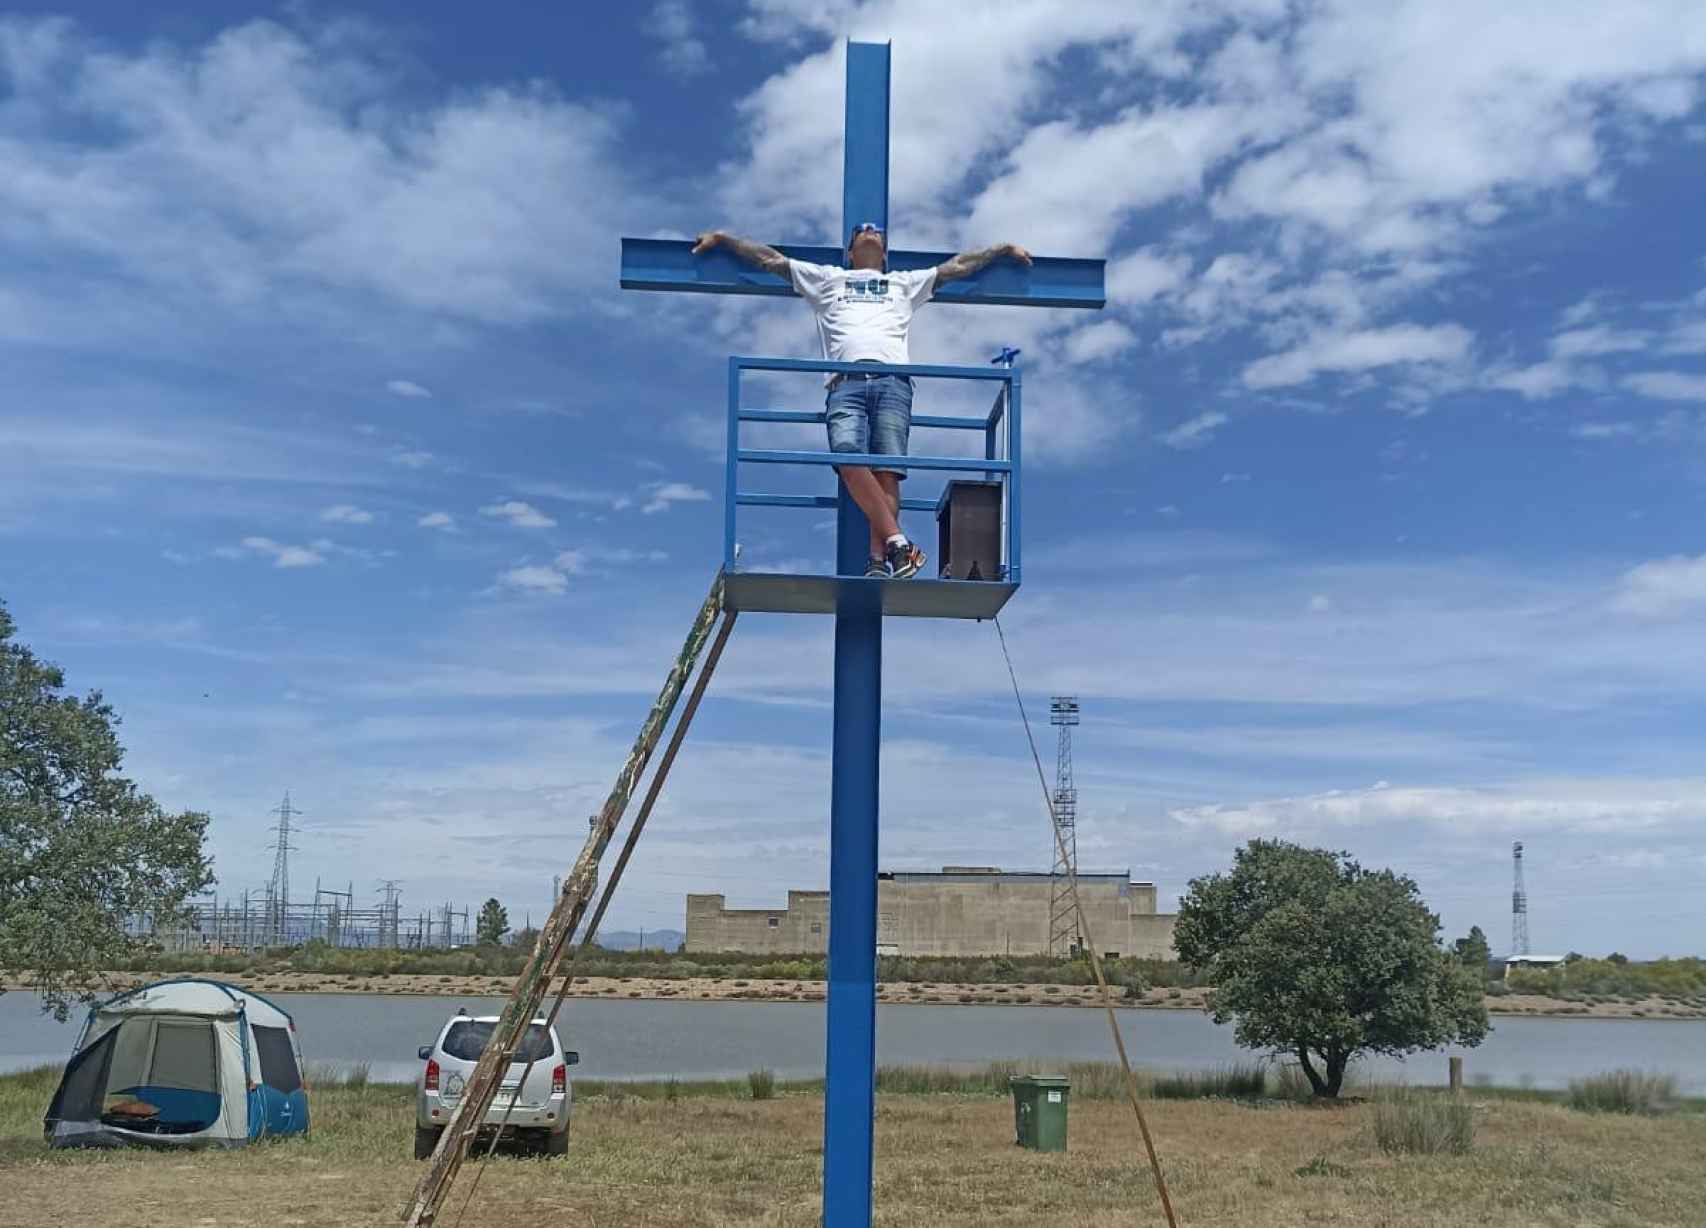 David Pravos 'crucificado' en su cruz improvisada frente a la vieja central nuclear de Valdecaballeros, en Badajoz